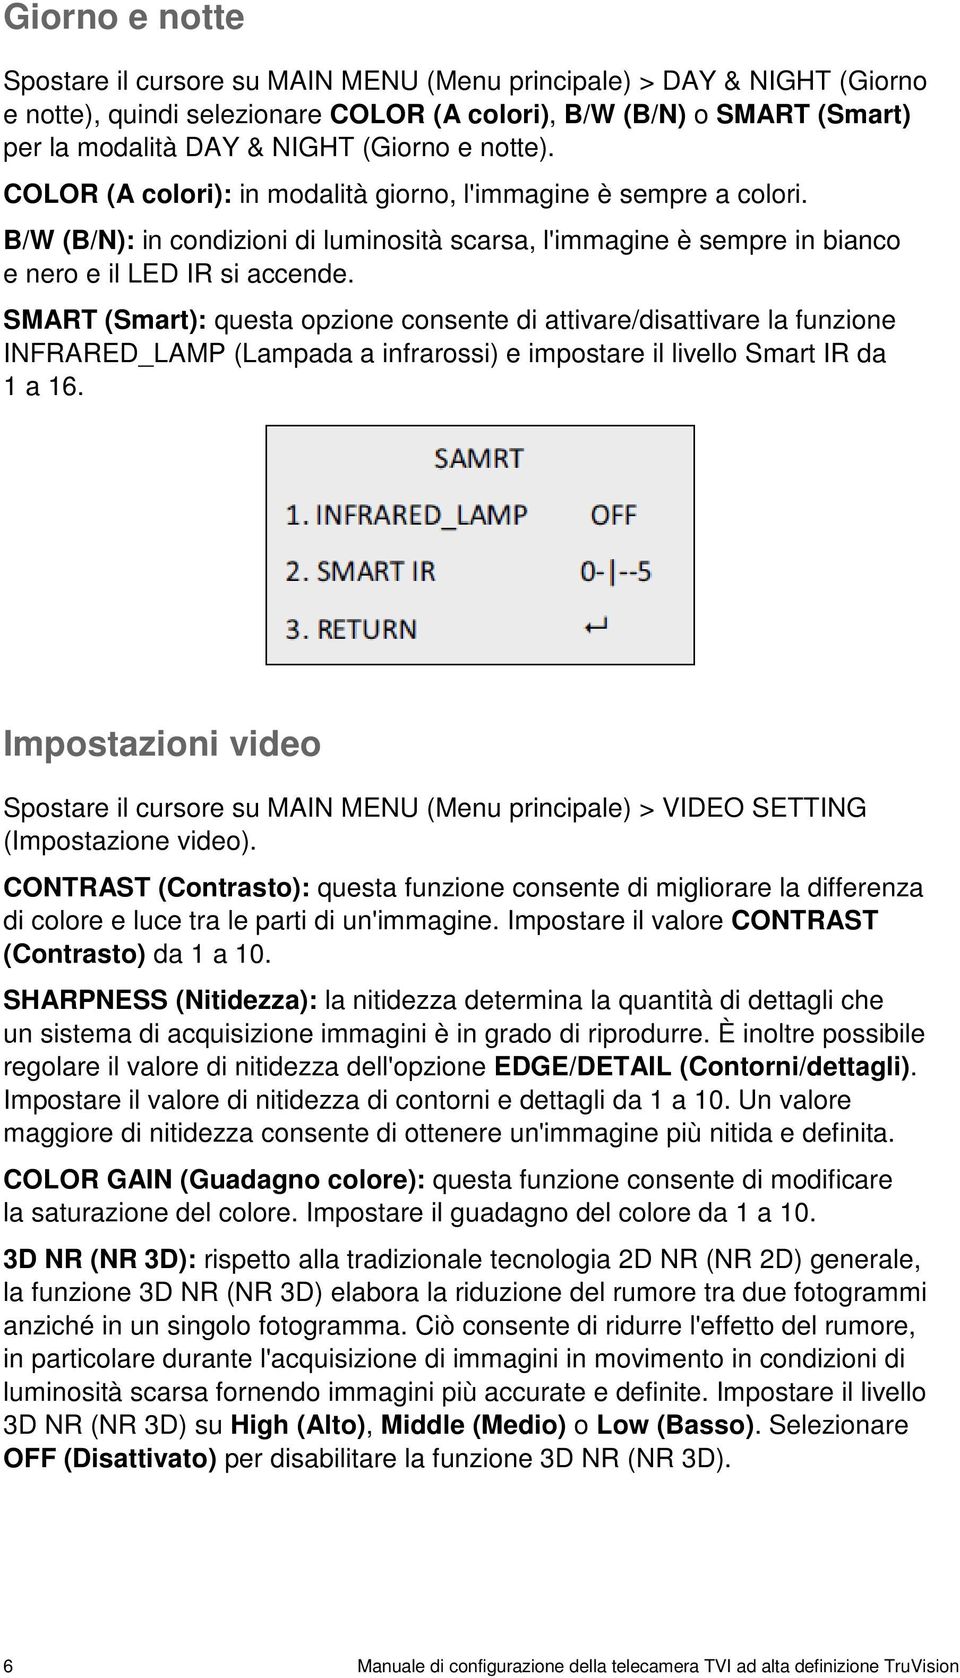 SMART (Smart): questa opzione consente di attivare/disattivare la funzione INFRARED_LAMP (Lampada a infrarossi) e impostare il livello Smart IR da 1 a 16.